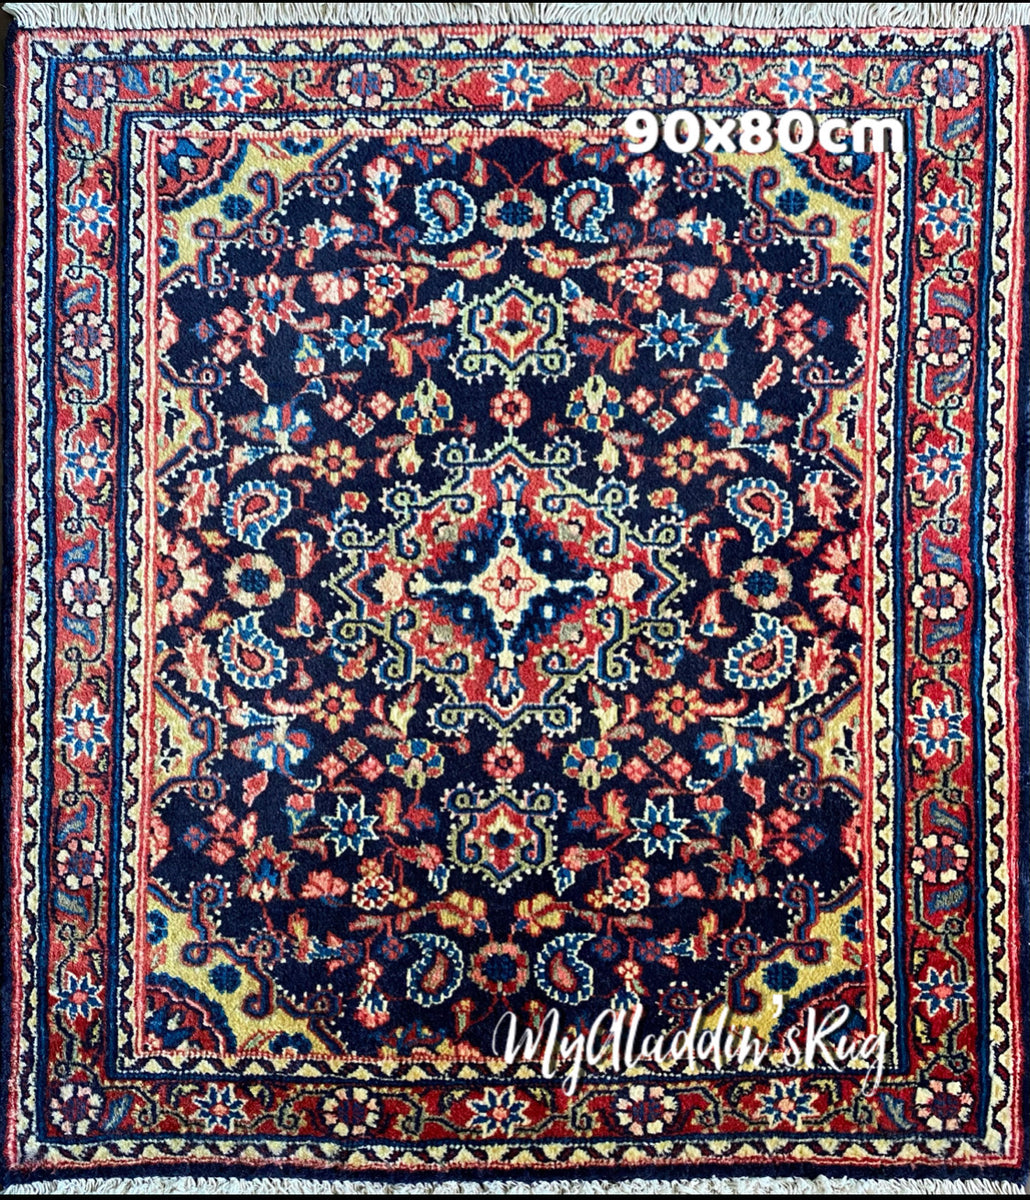 ジョーザン産 ペルシャ絨毯 90×80cm-